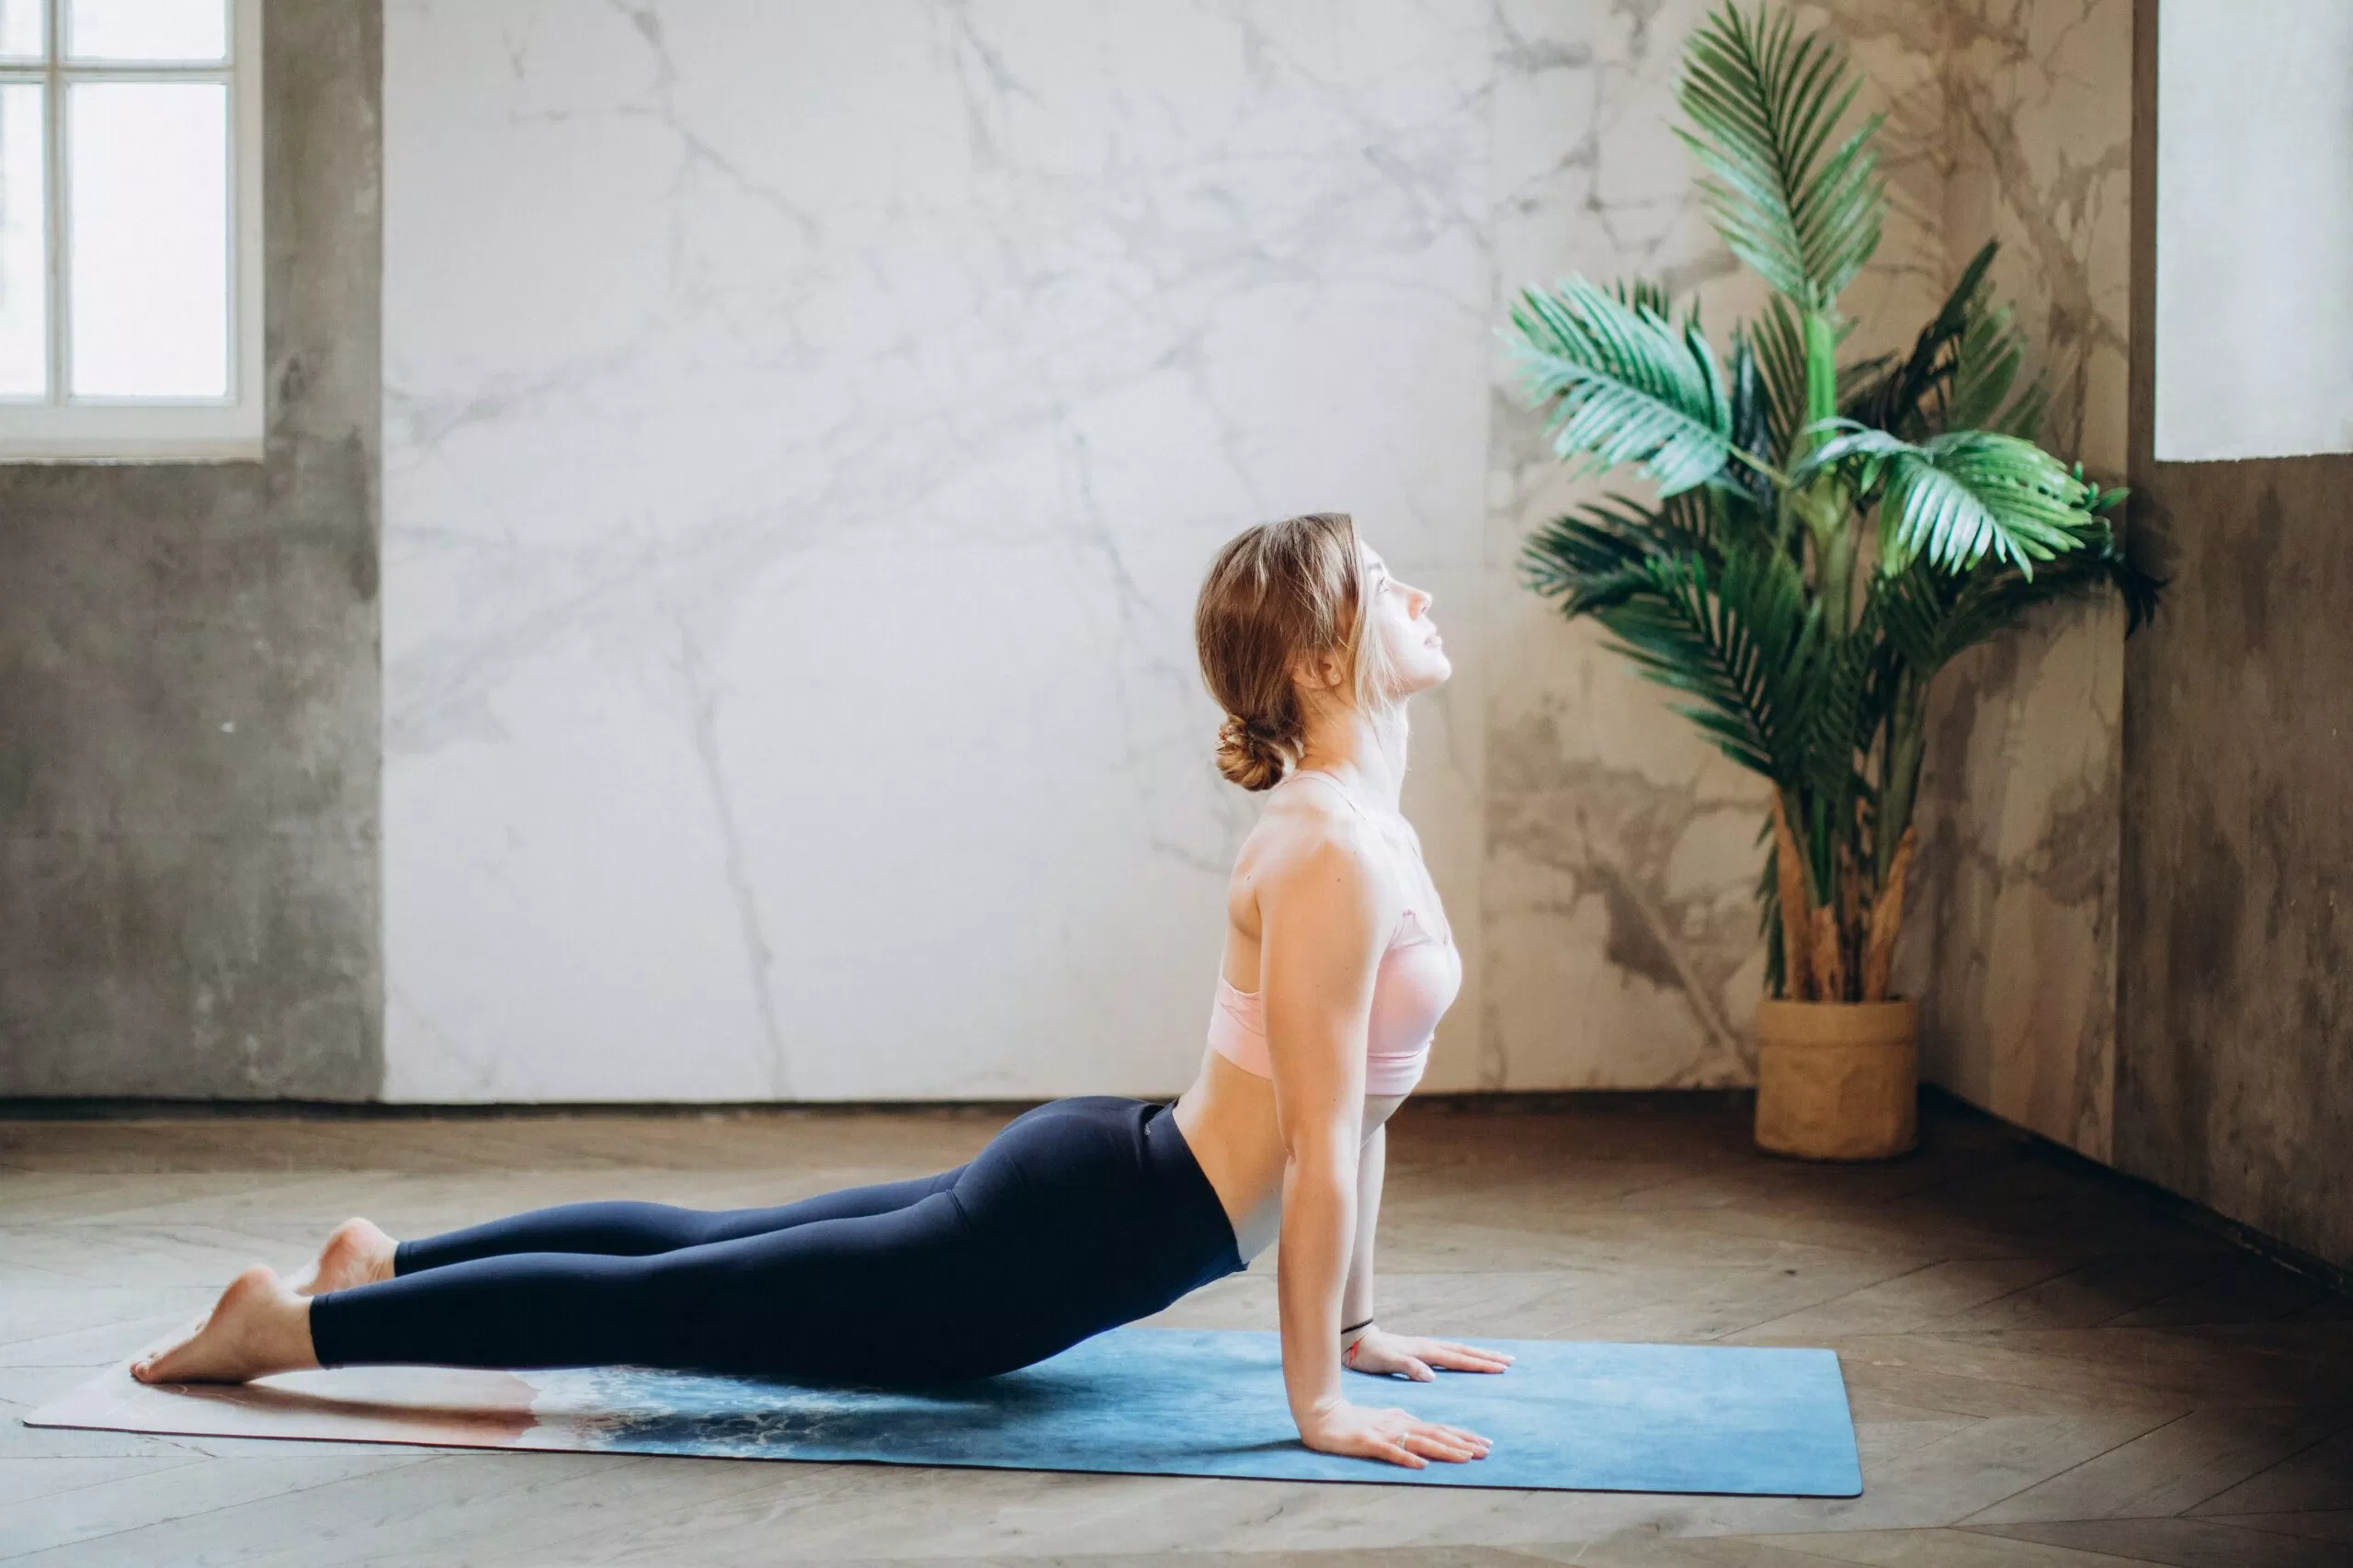 Yoga là phương pháp điều trị đau lưng mãn tính hiệu quả hơn so với phương pháp chăm sóc thông thường để cải thiện chức năng lưng. (Nguồn: Internet)